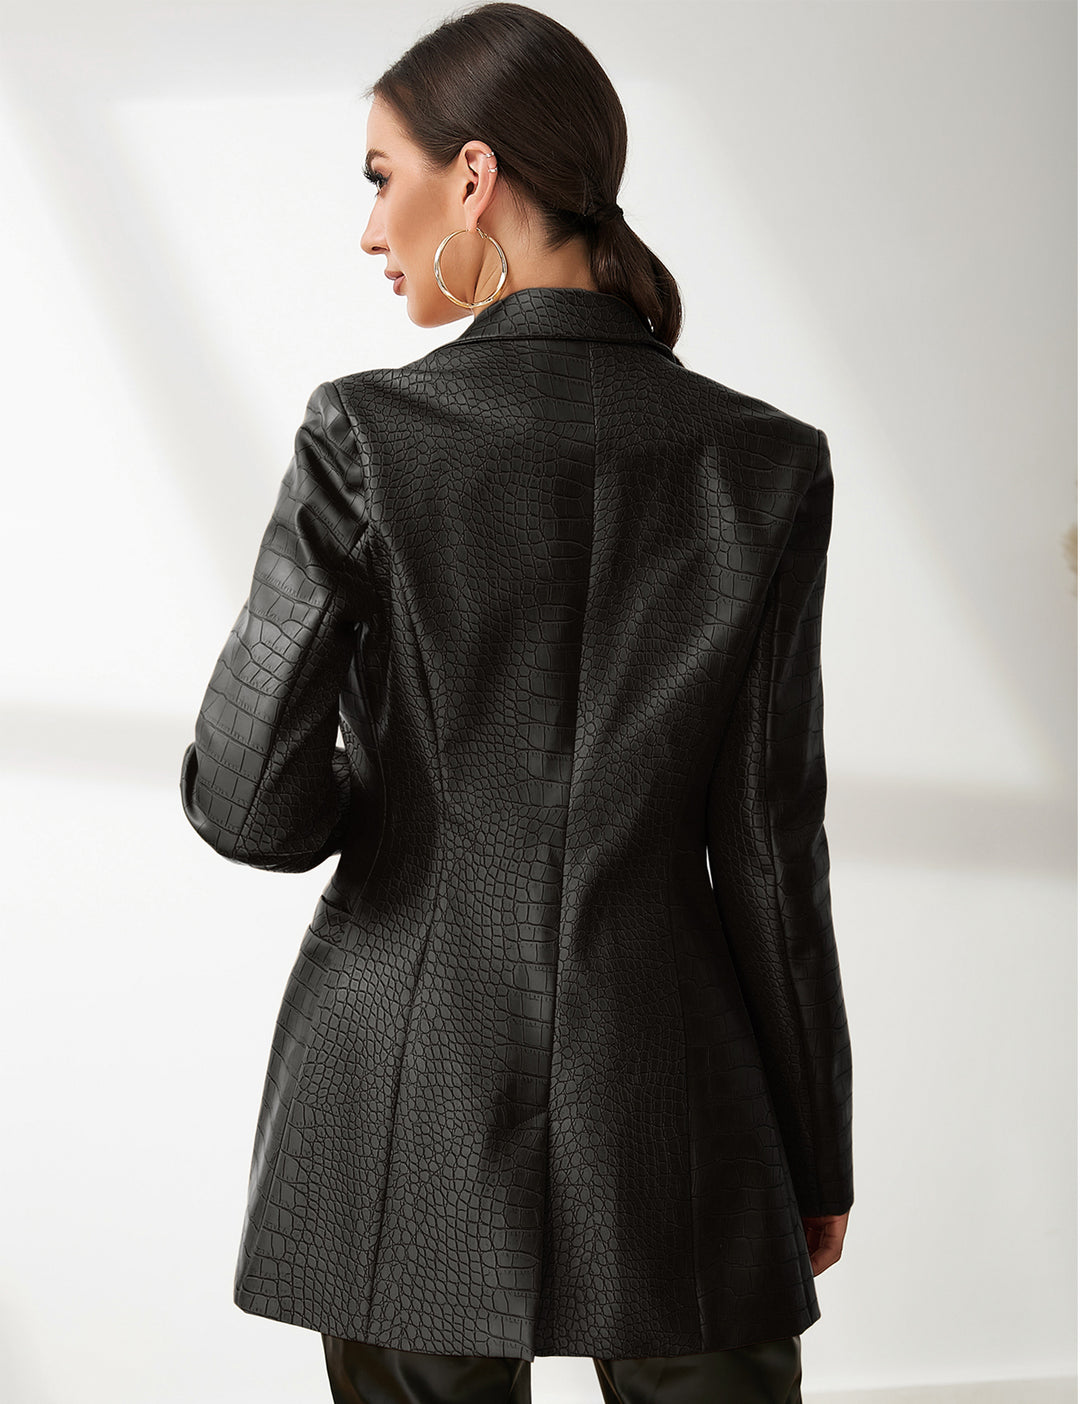 Faux Leather Crocodile Pattern Blazer Jacket In Black